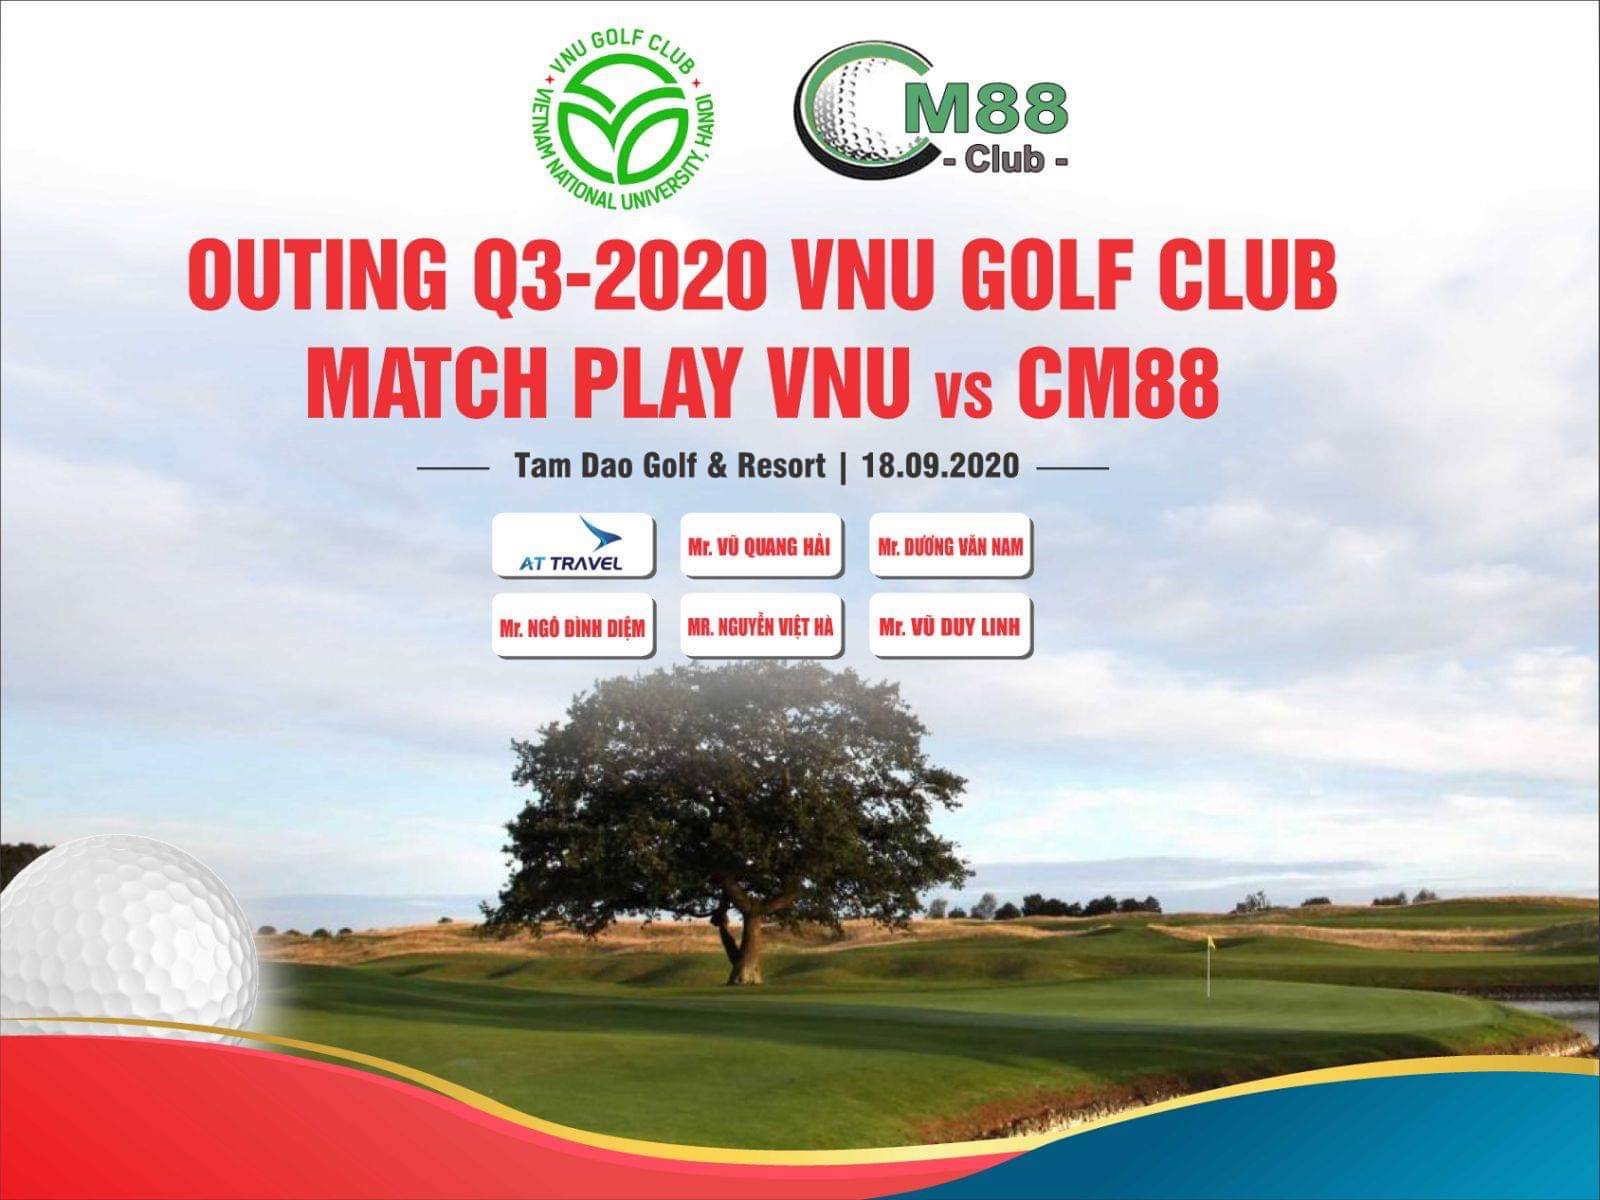 Giao hữu giữa VNU Golf Club và CM88 Golf Club tại sân Tam Đảo.